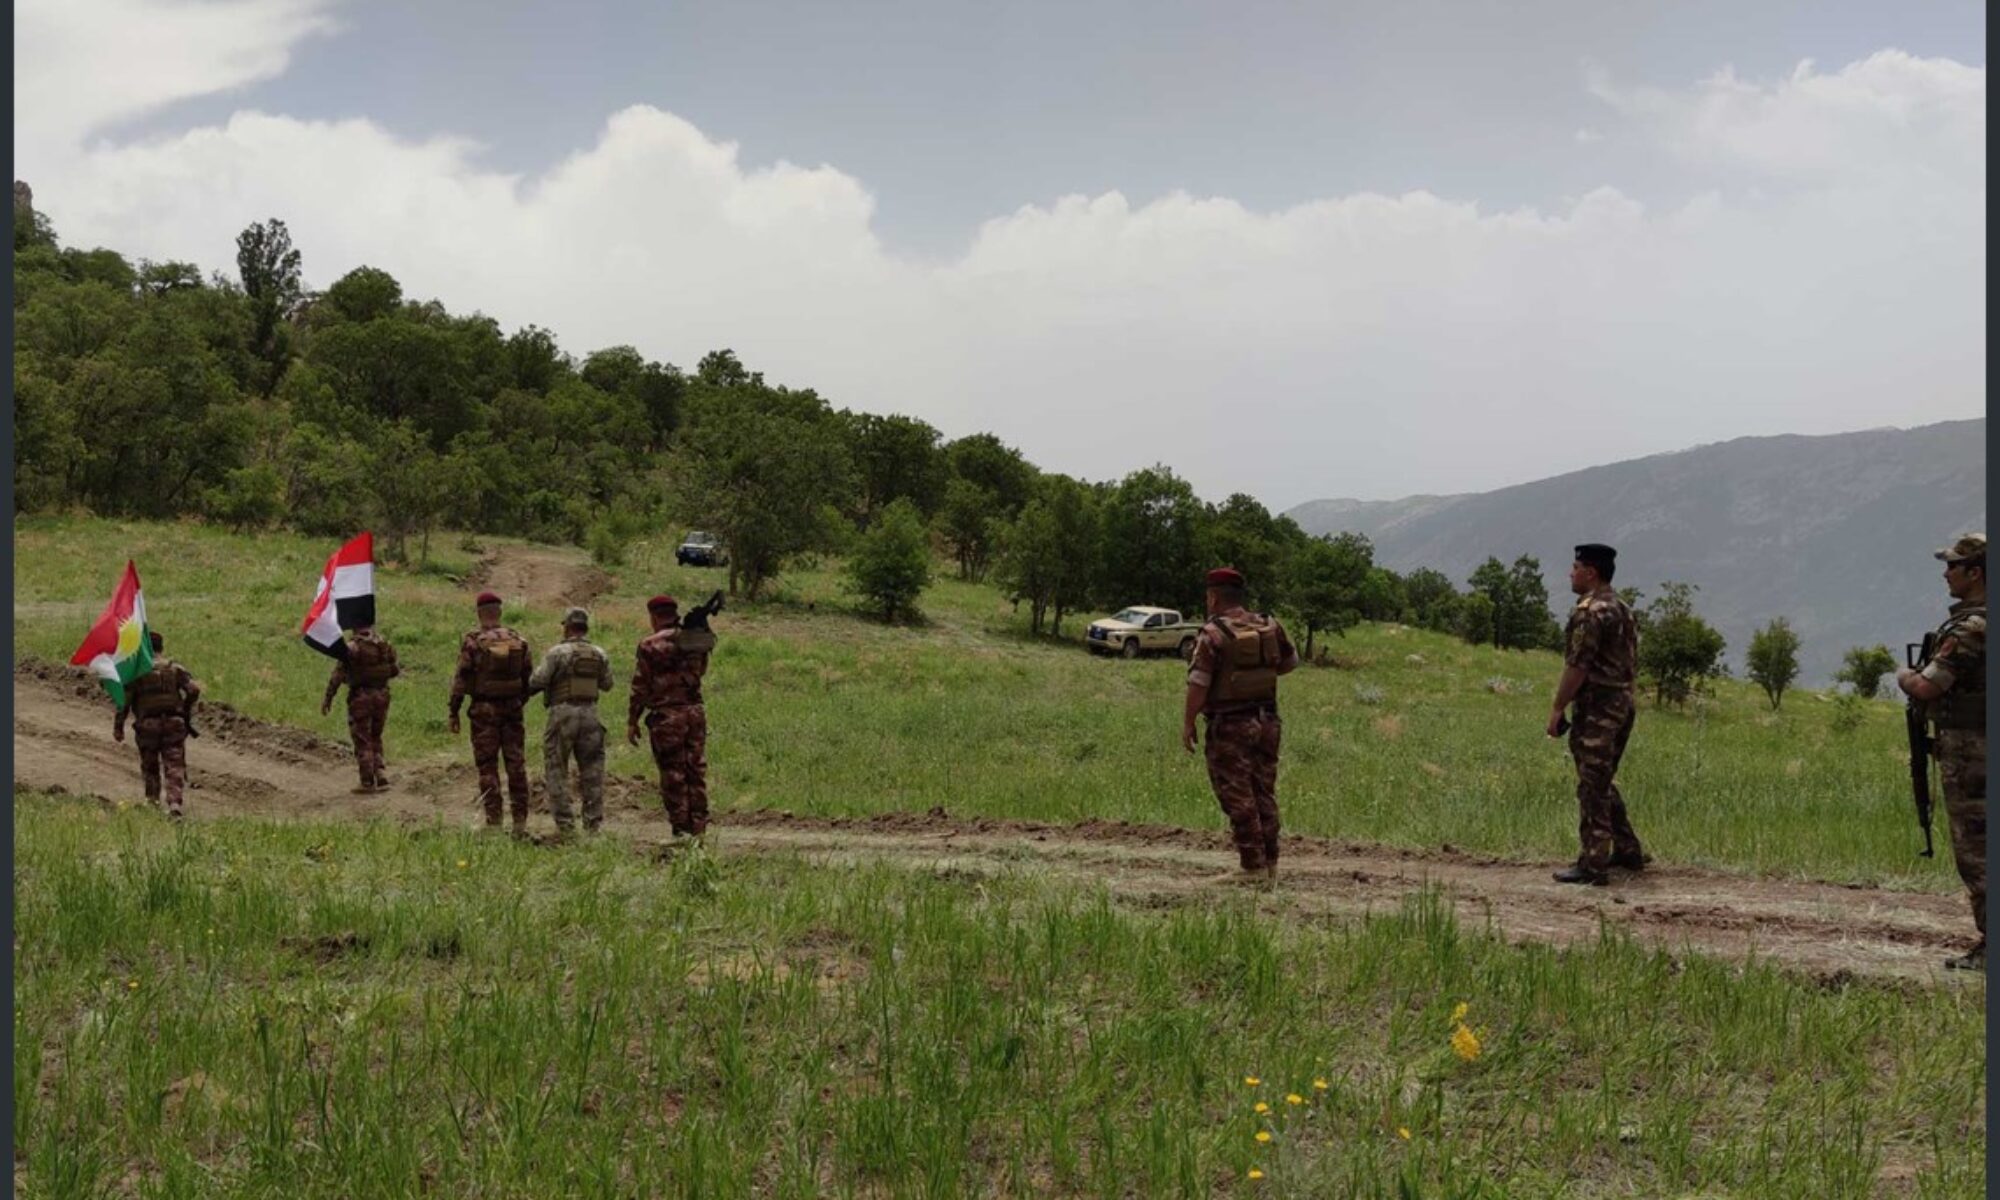  PKK ve TSK çatışmasının iç hatlara kaymasını engellemek için Sınır Muhafızları harekete geçti: 240 km’de 30 kontrol noktası kuruldu Mergesor, Derecik, Rubarok, Kandil, Peşmerge